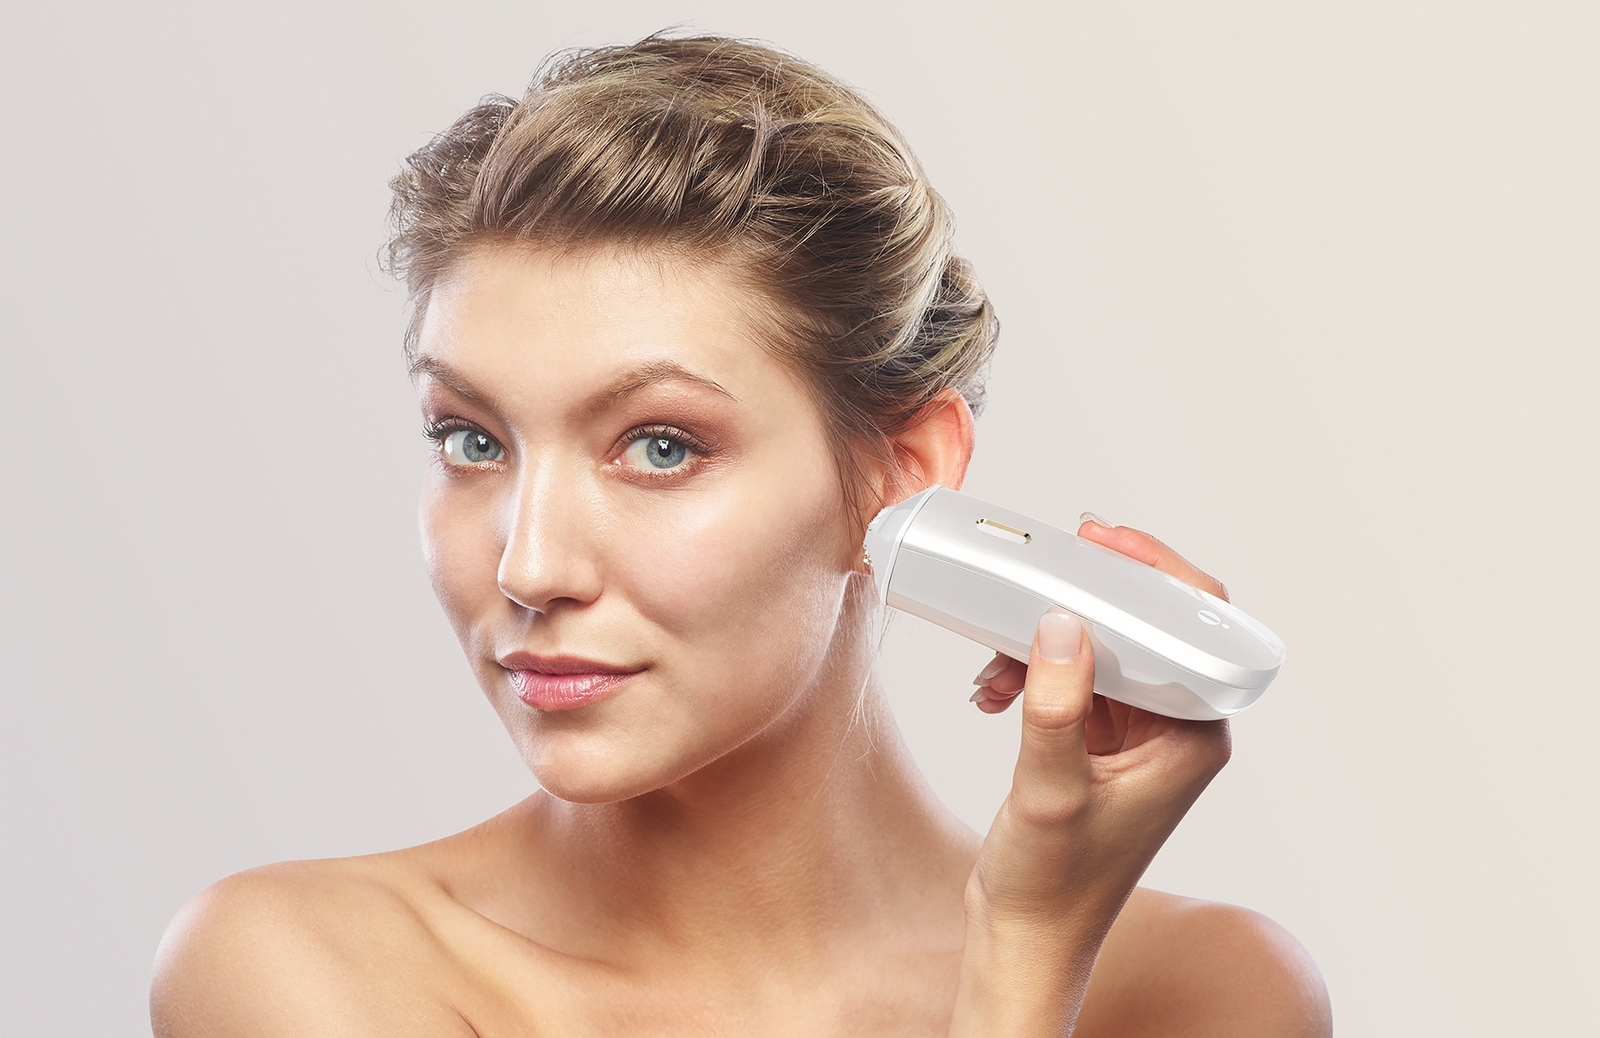 L’Opté Precision Skincare System de Procter & Gamble n’est pas encore commercialisé. © Procter & Gamble